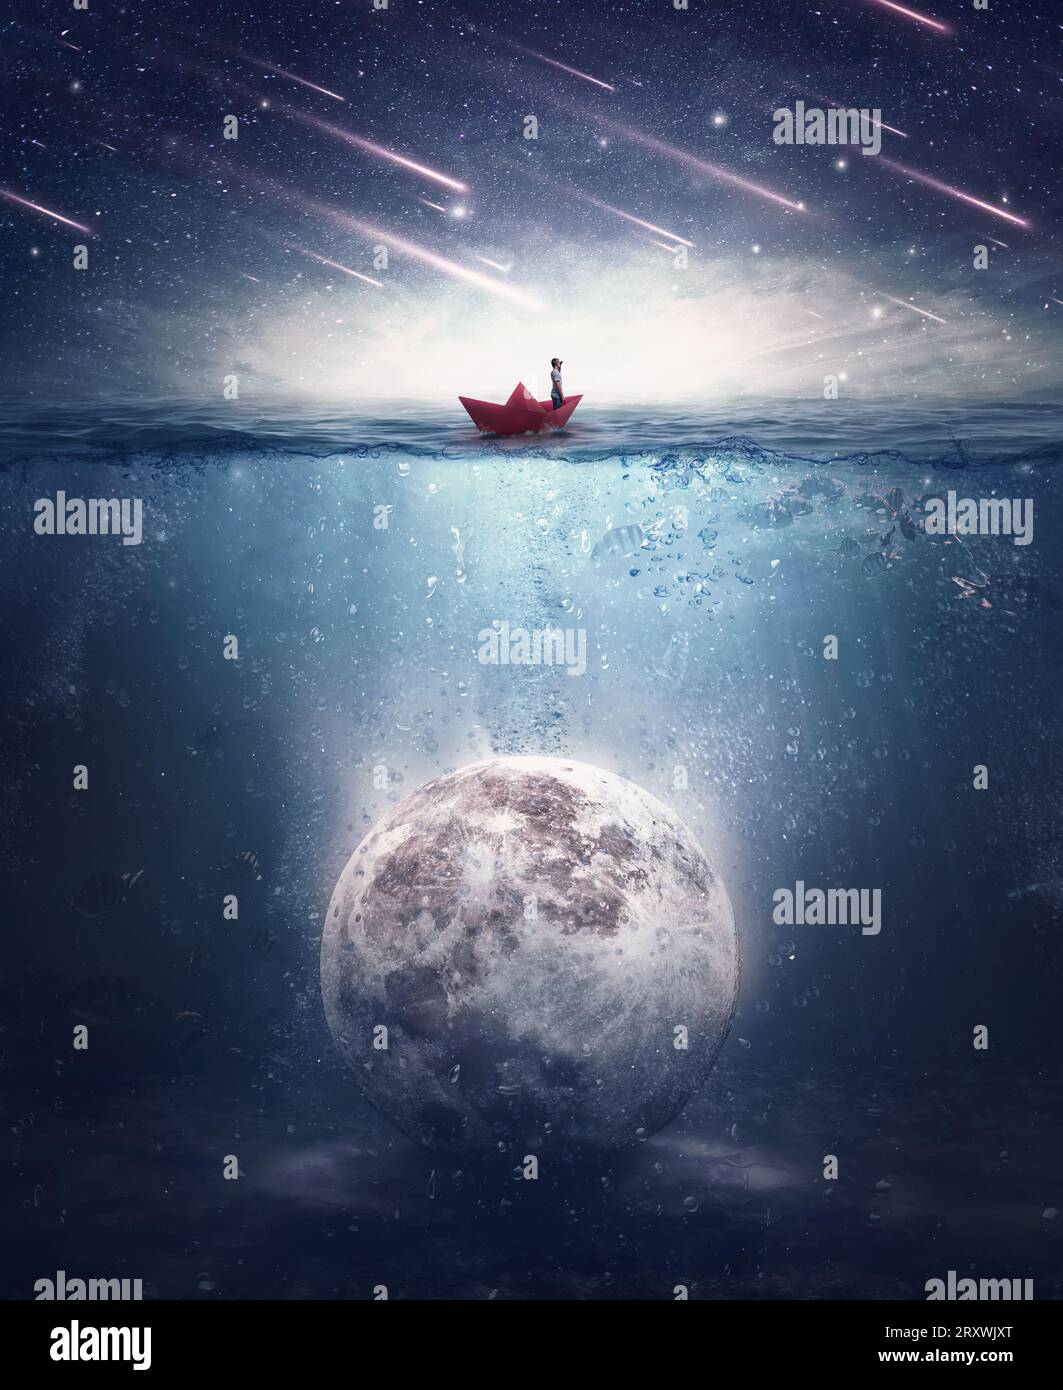 Garçon naviguant dans un bateau de papier à la recherche de la lune submergée sous l'eau. Satellite noyé dans l'eau de l'océan dans une nuit mystérieuse avec des étoiles tombantes. S Banque D'Images